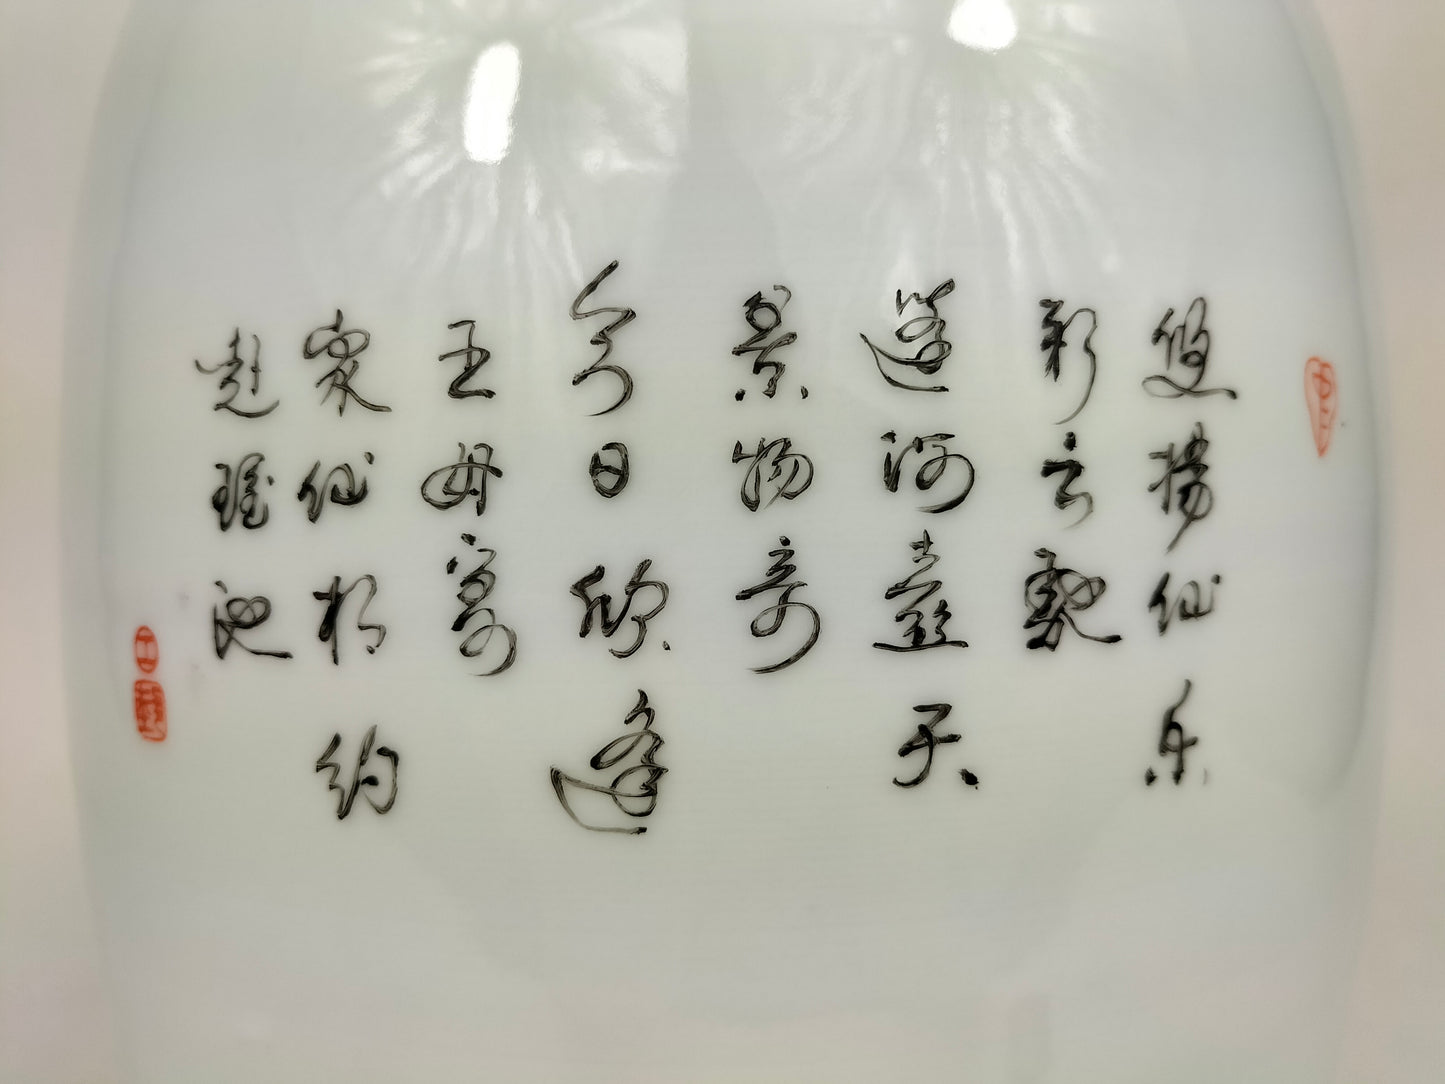 Vase en porcelaine de Chine famille rose à décor de 8 immortels // Jingdezhen - XXe siècle